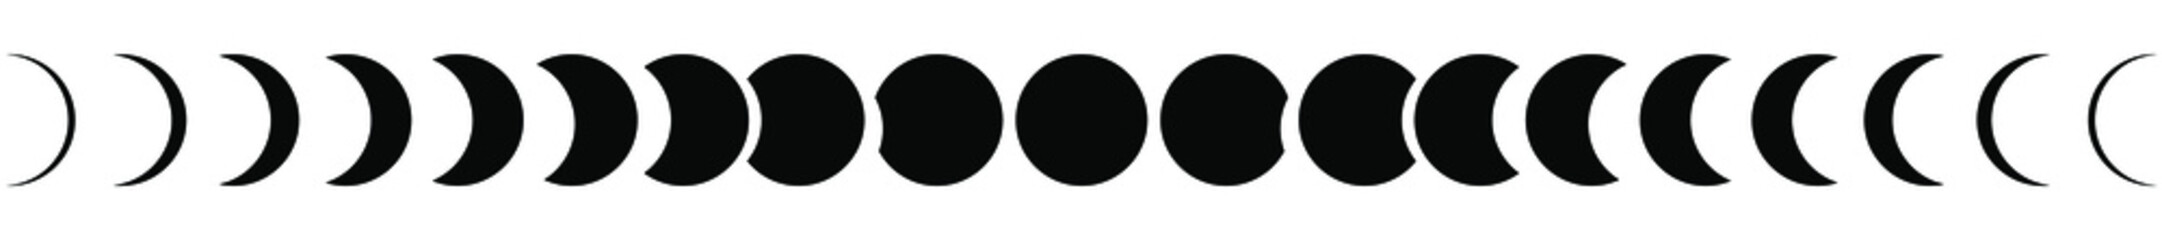 Fototapeta na wymiar Moon phases astronomy icon set